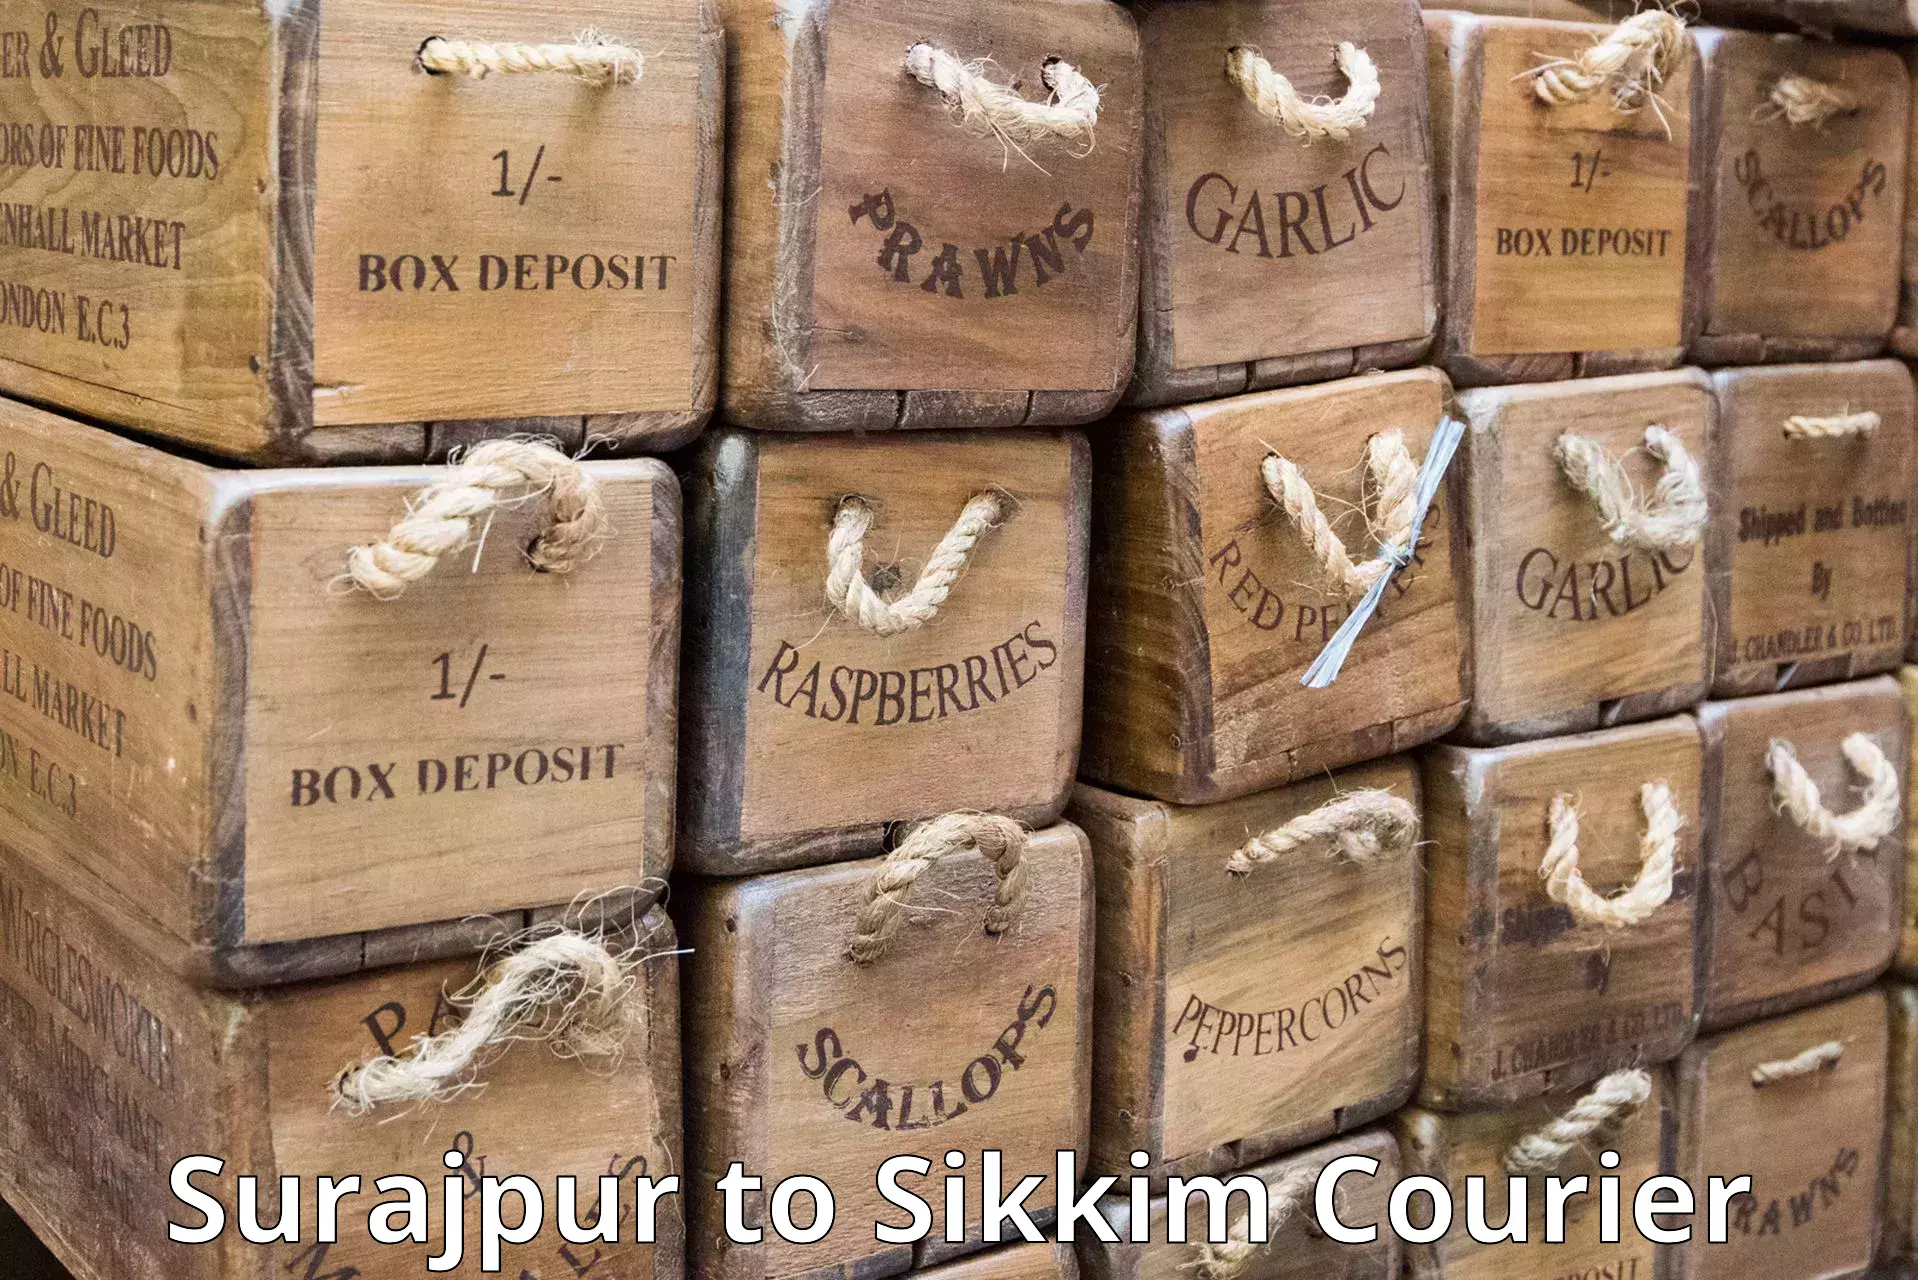 Quick parcel dispatch Surajpur to Pelling